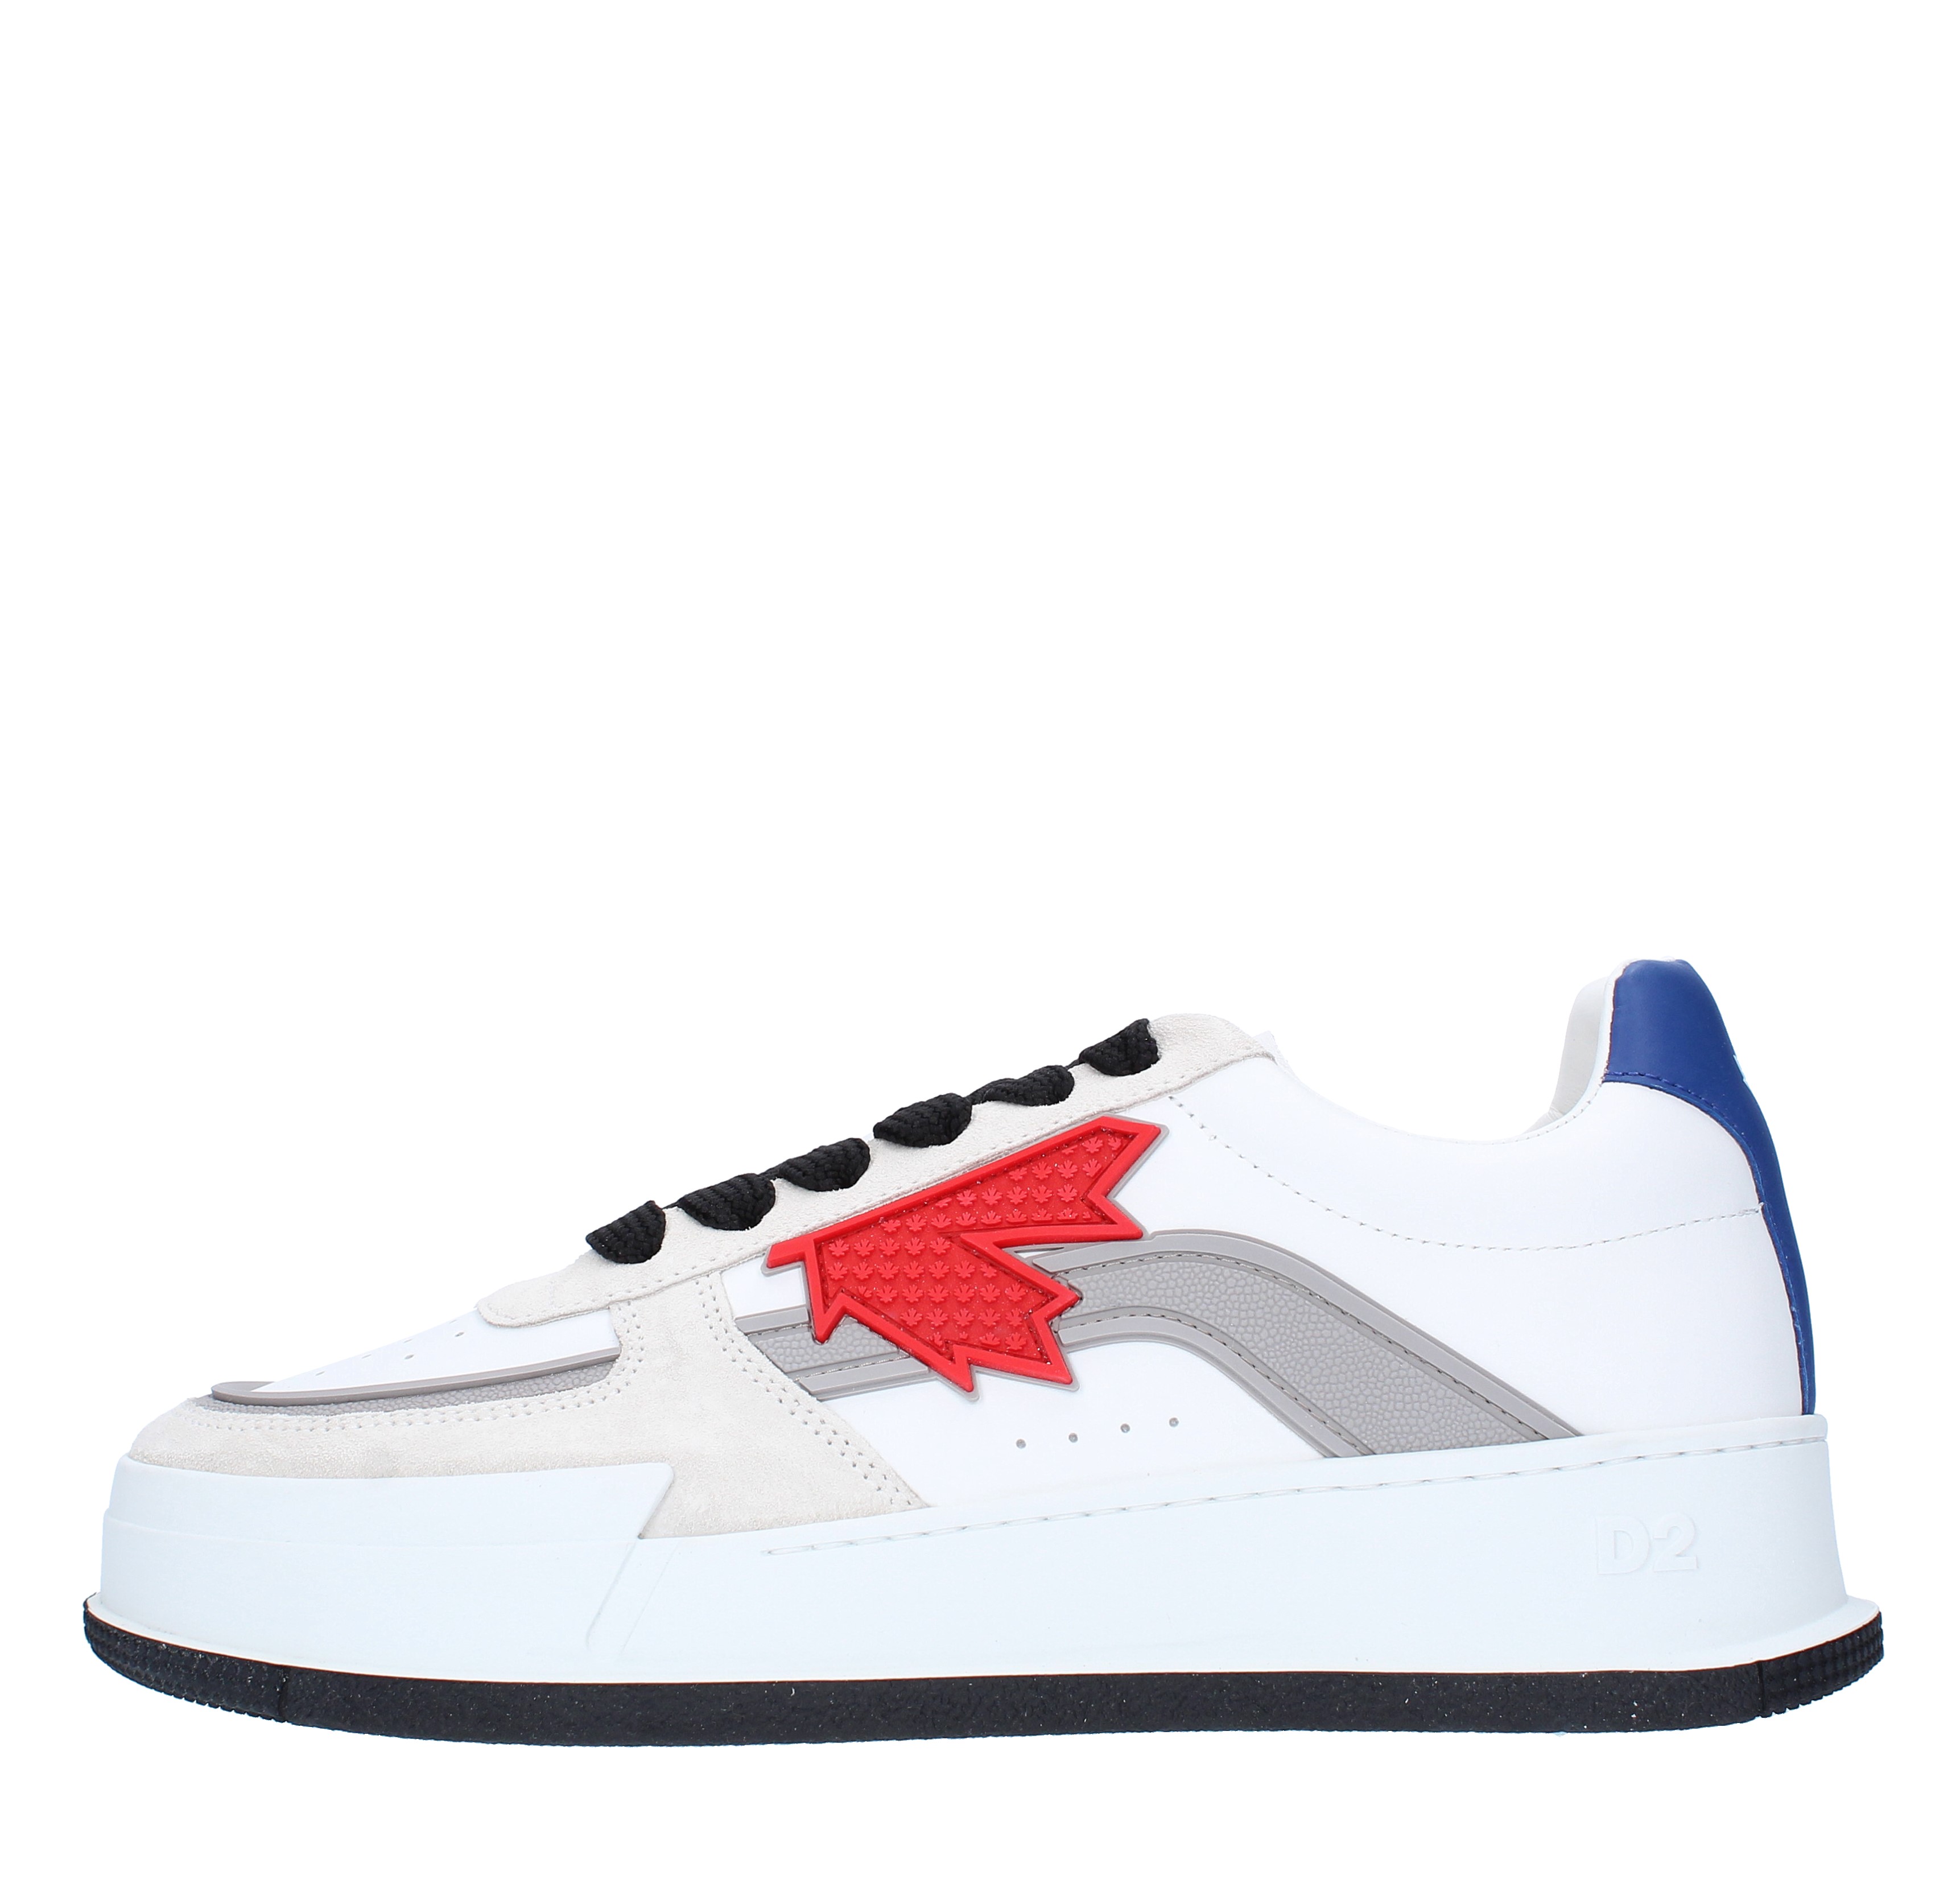 Sneakers DSQUARED2 CANADIAN in pelle di vitello, velluto e pvc - DSQUARED2  - Ginevra calzature